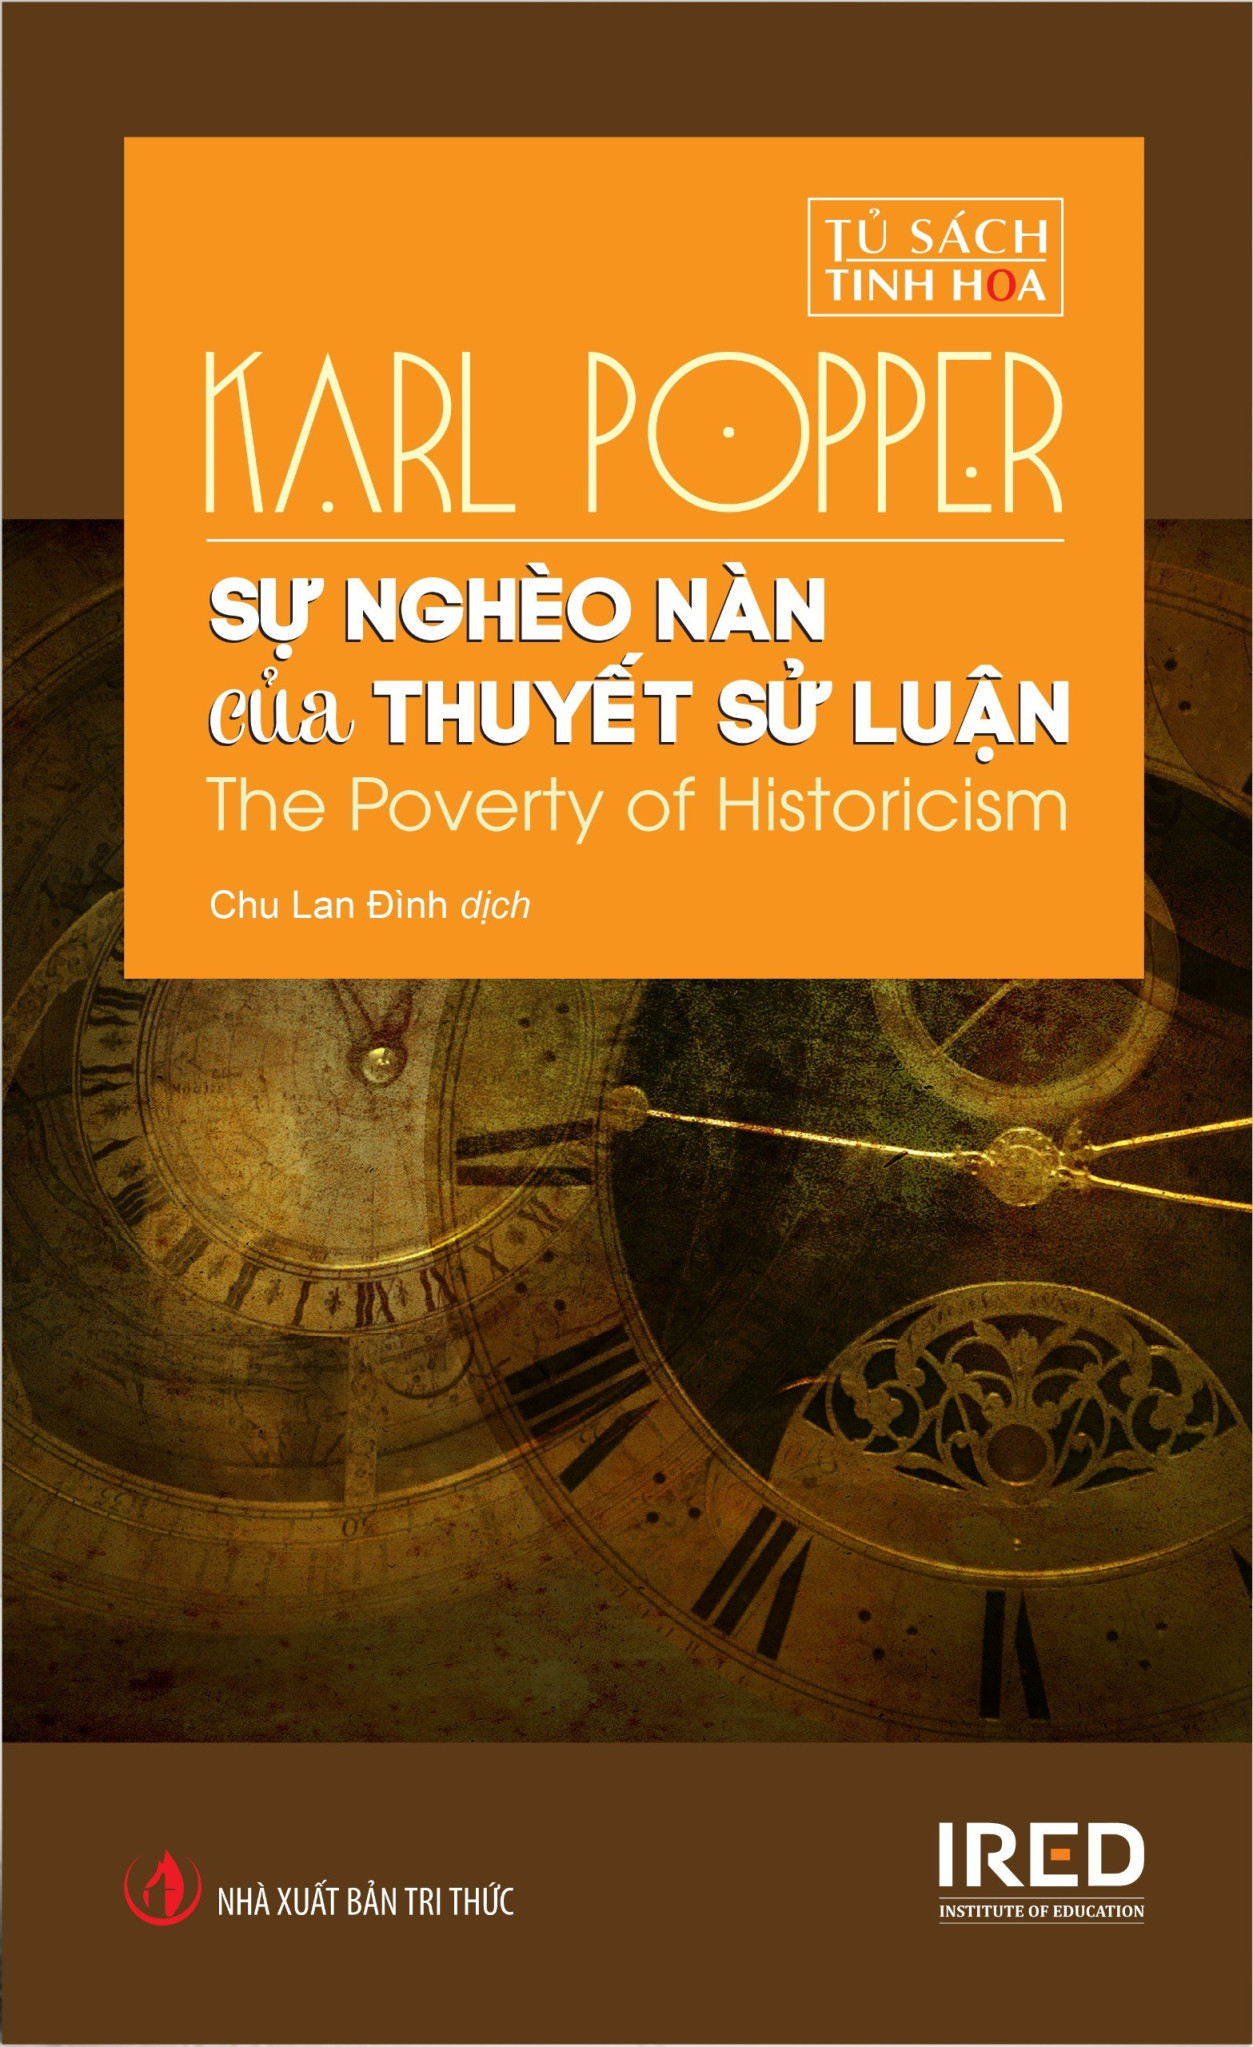 (Bìa Cứng) SỰ NGHÈO NÀN CỦA THUYẾT SỬ LUẬN (The Poverty of Historicism - Karl Popper - Chu Lan Đình dịch